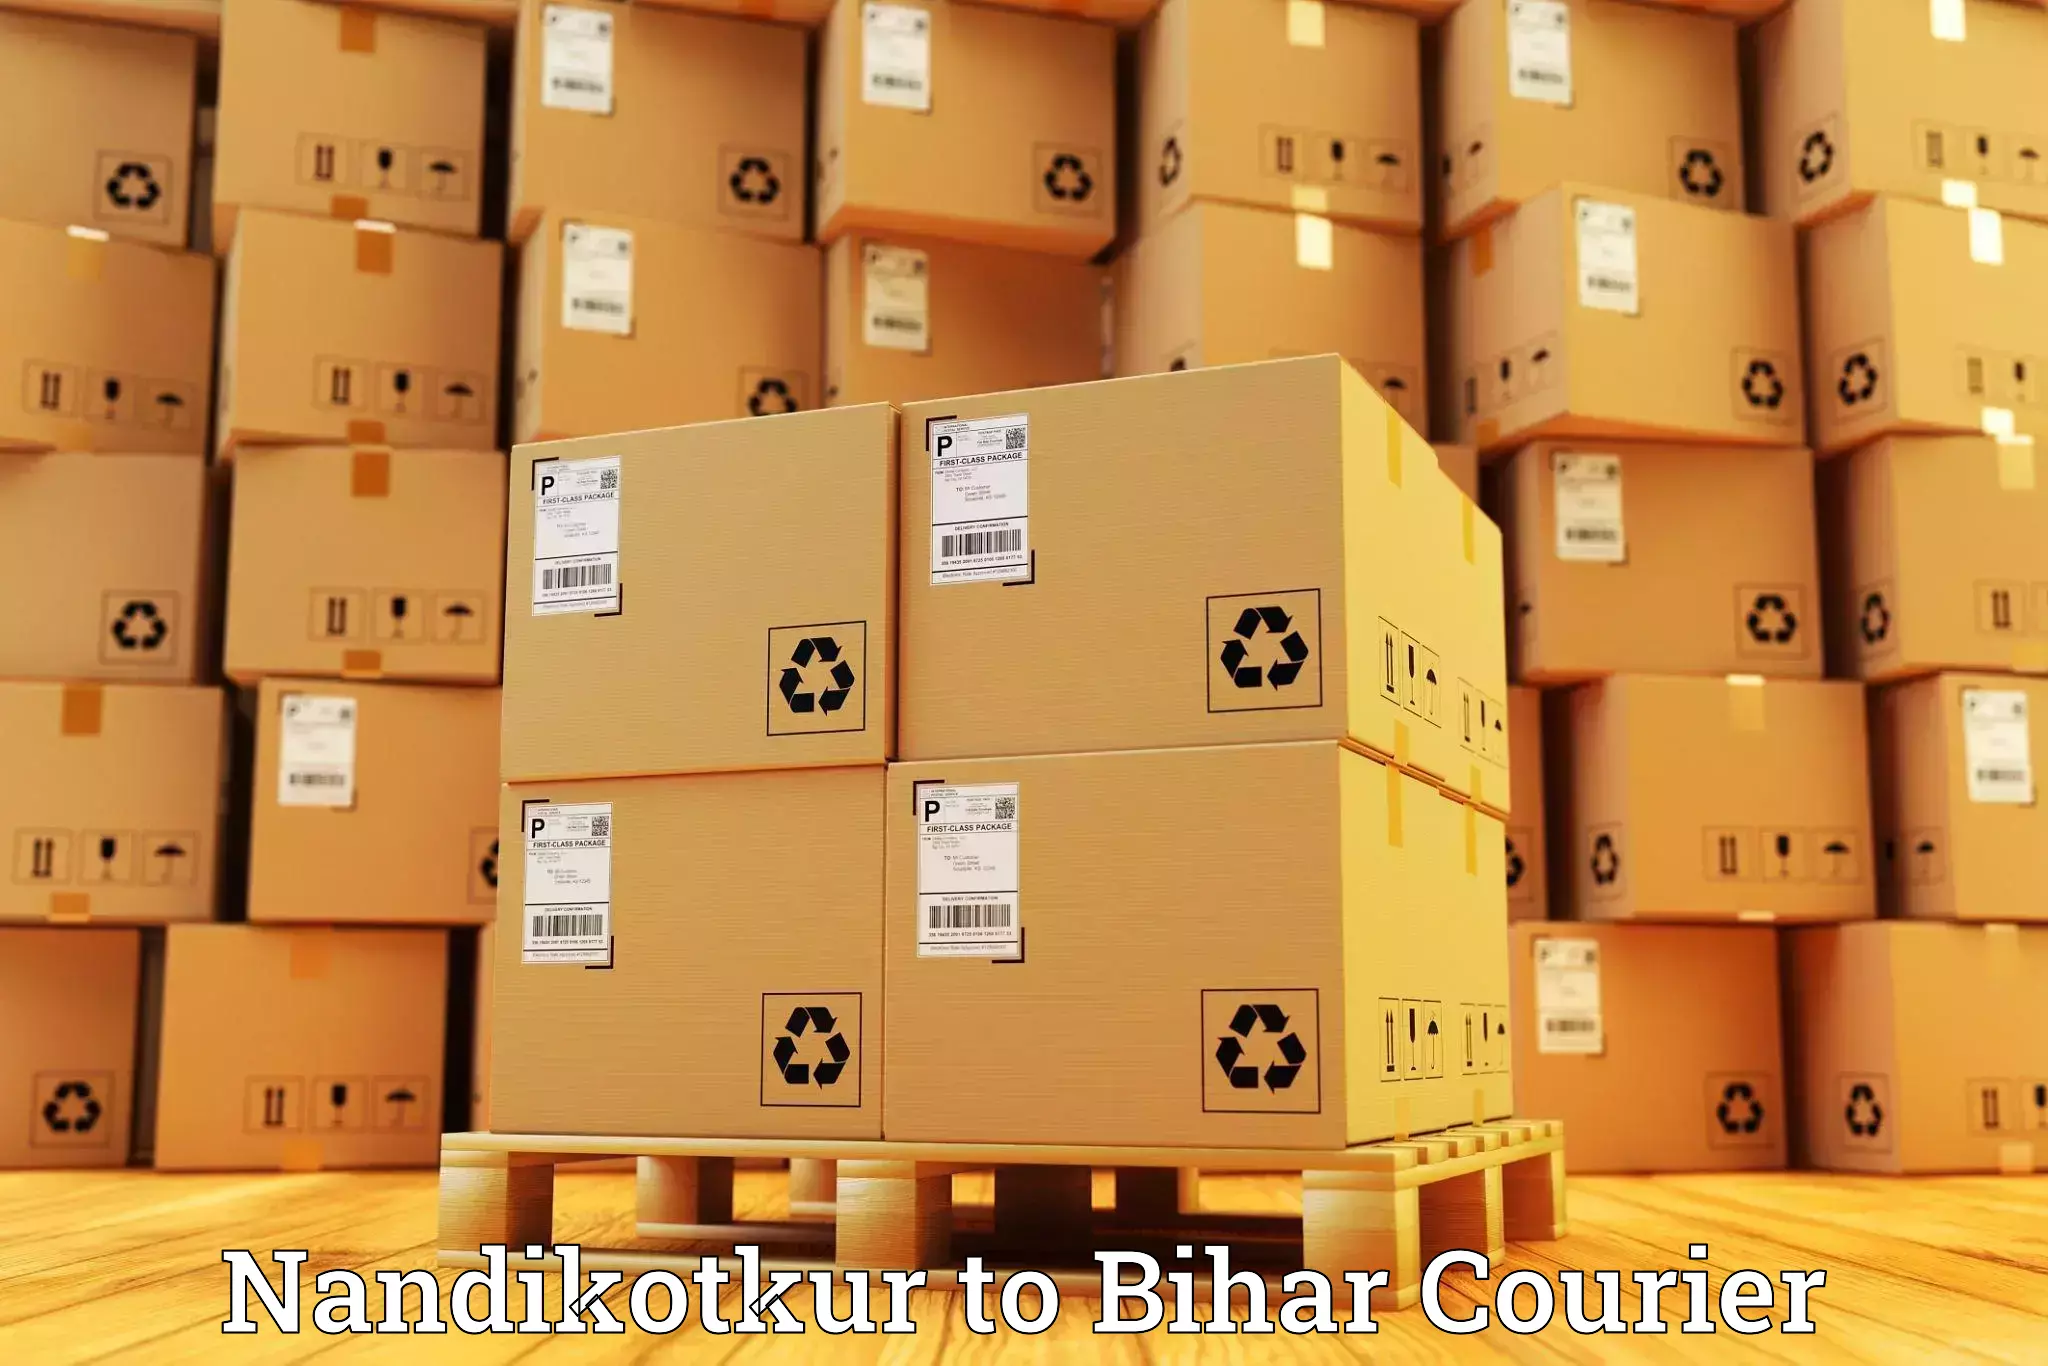 High-capacity parcel service Nandikotkur to Kishanganj